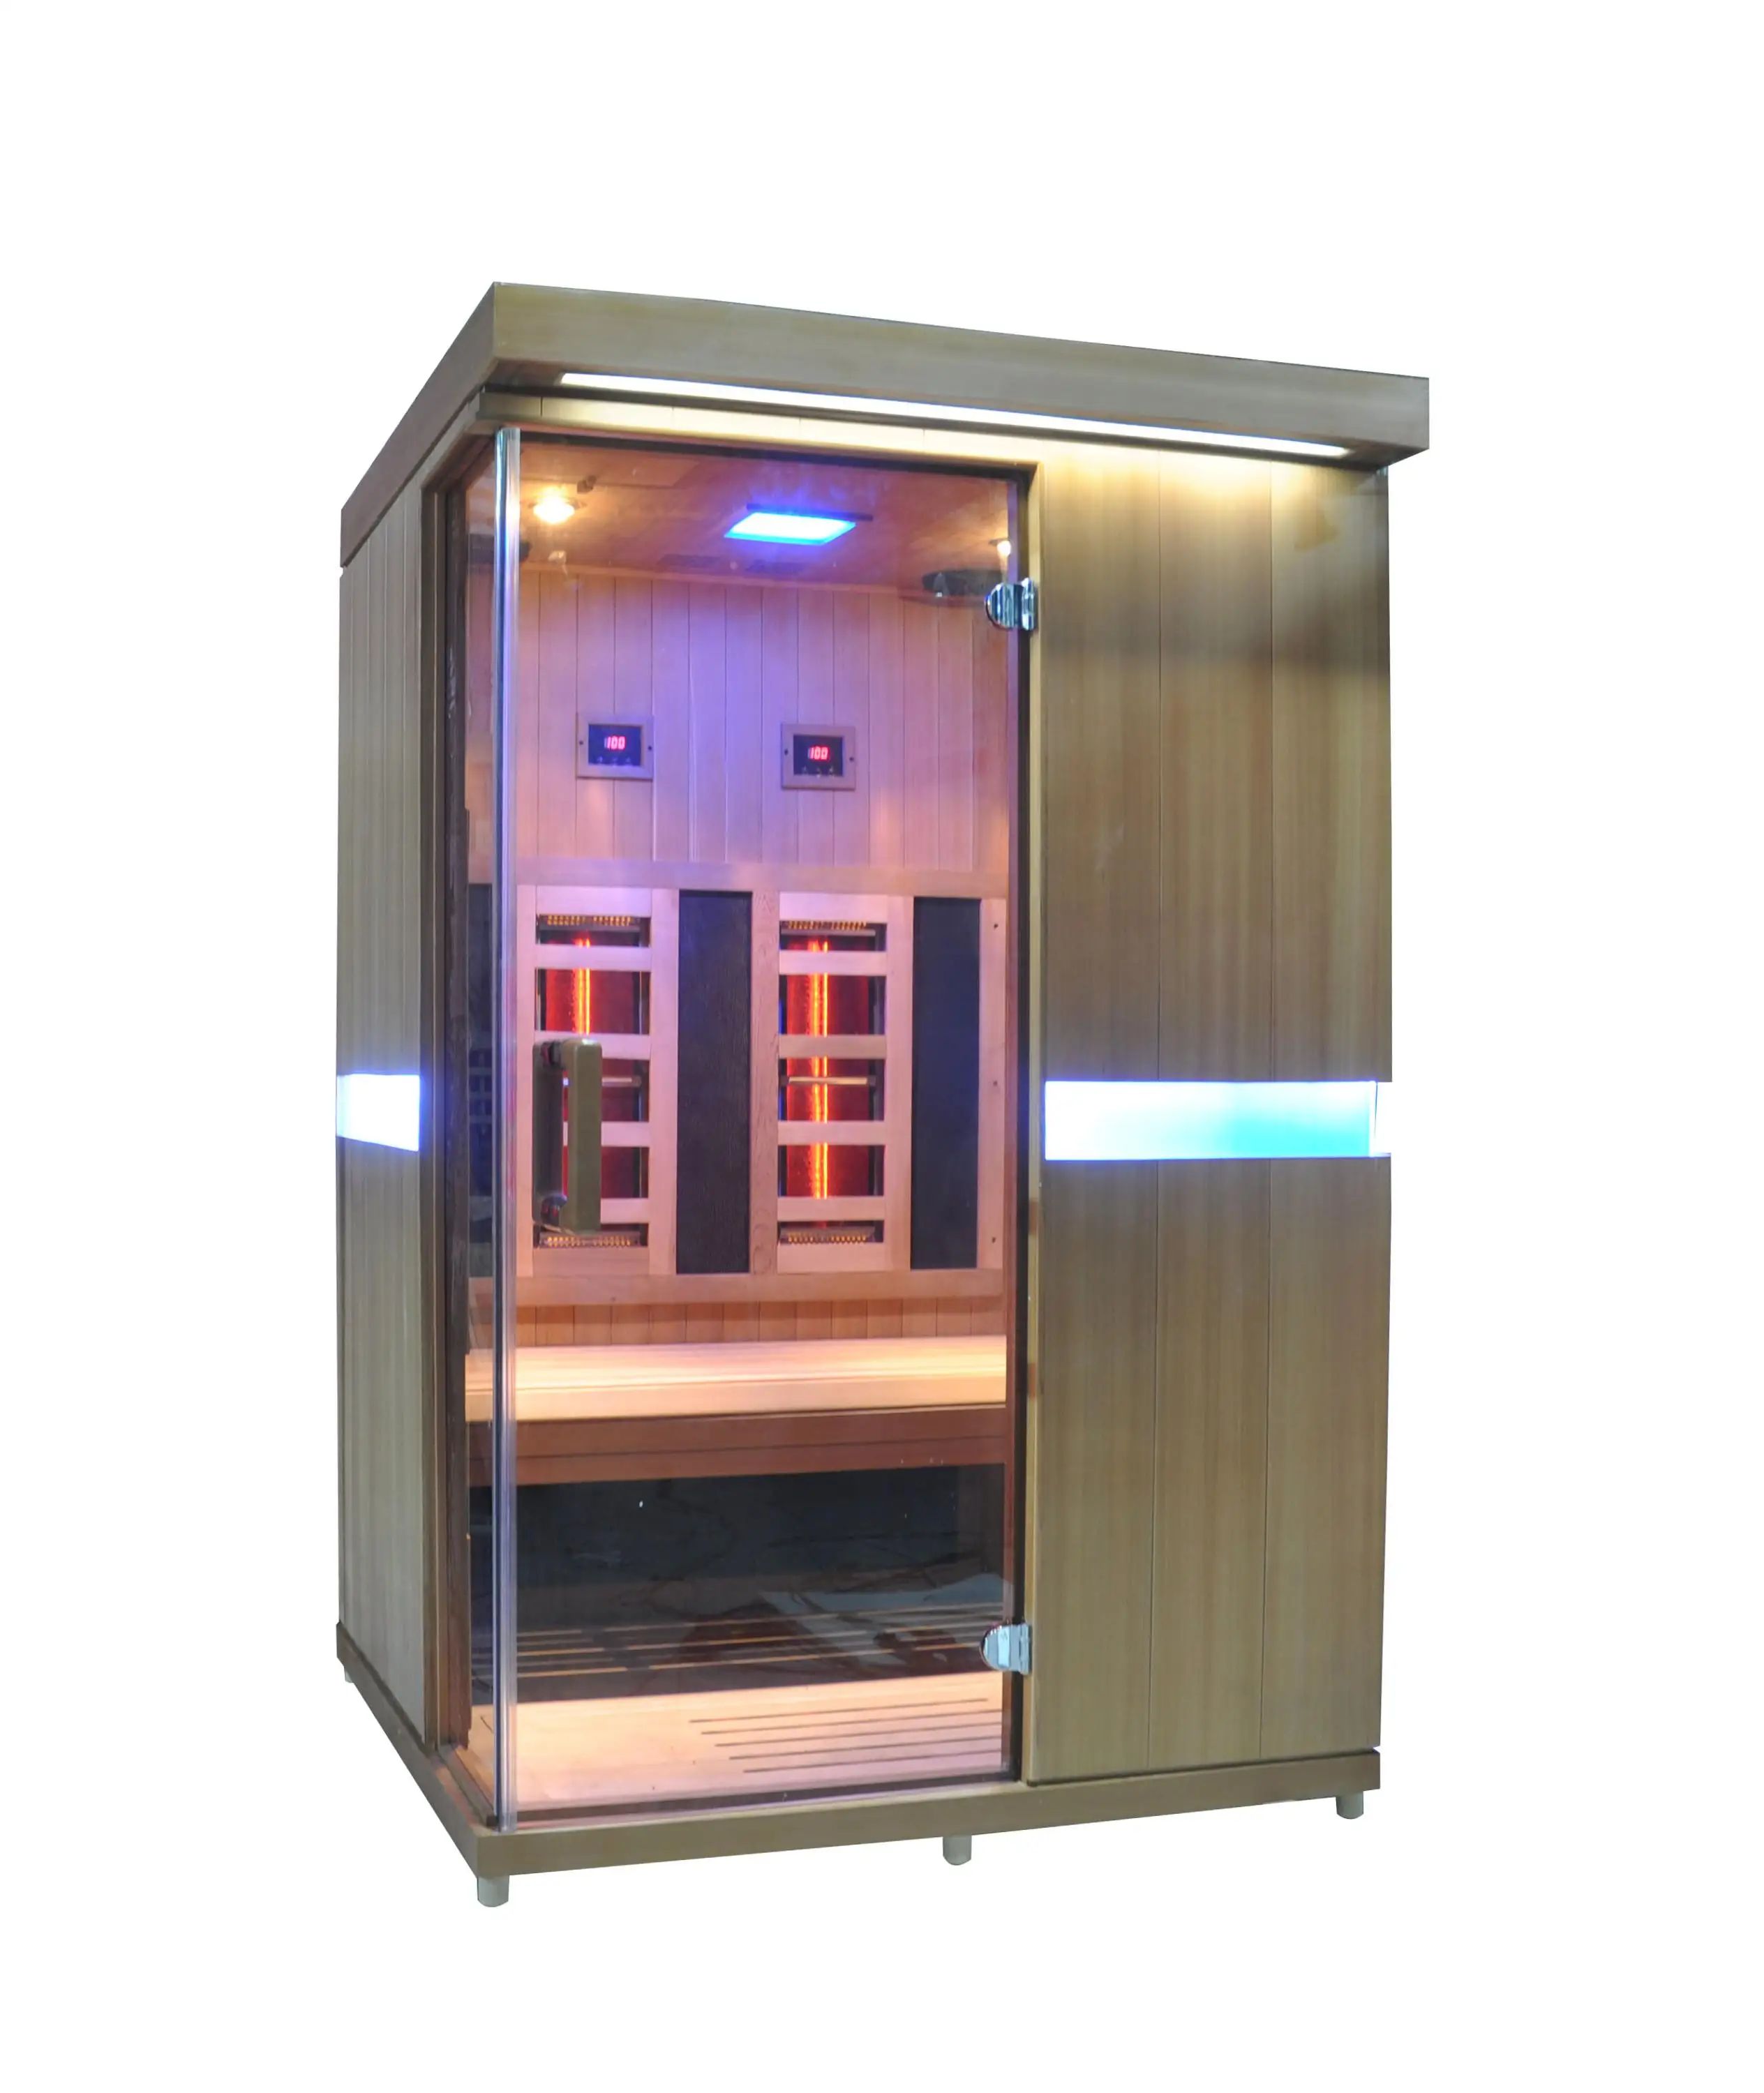 infrared & steam 2-in-1 combination sauna